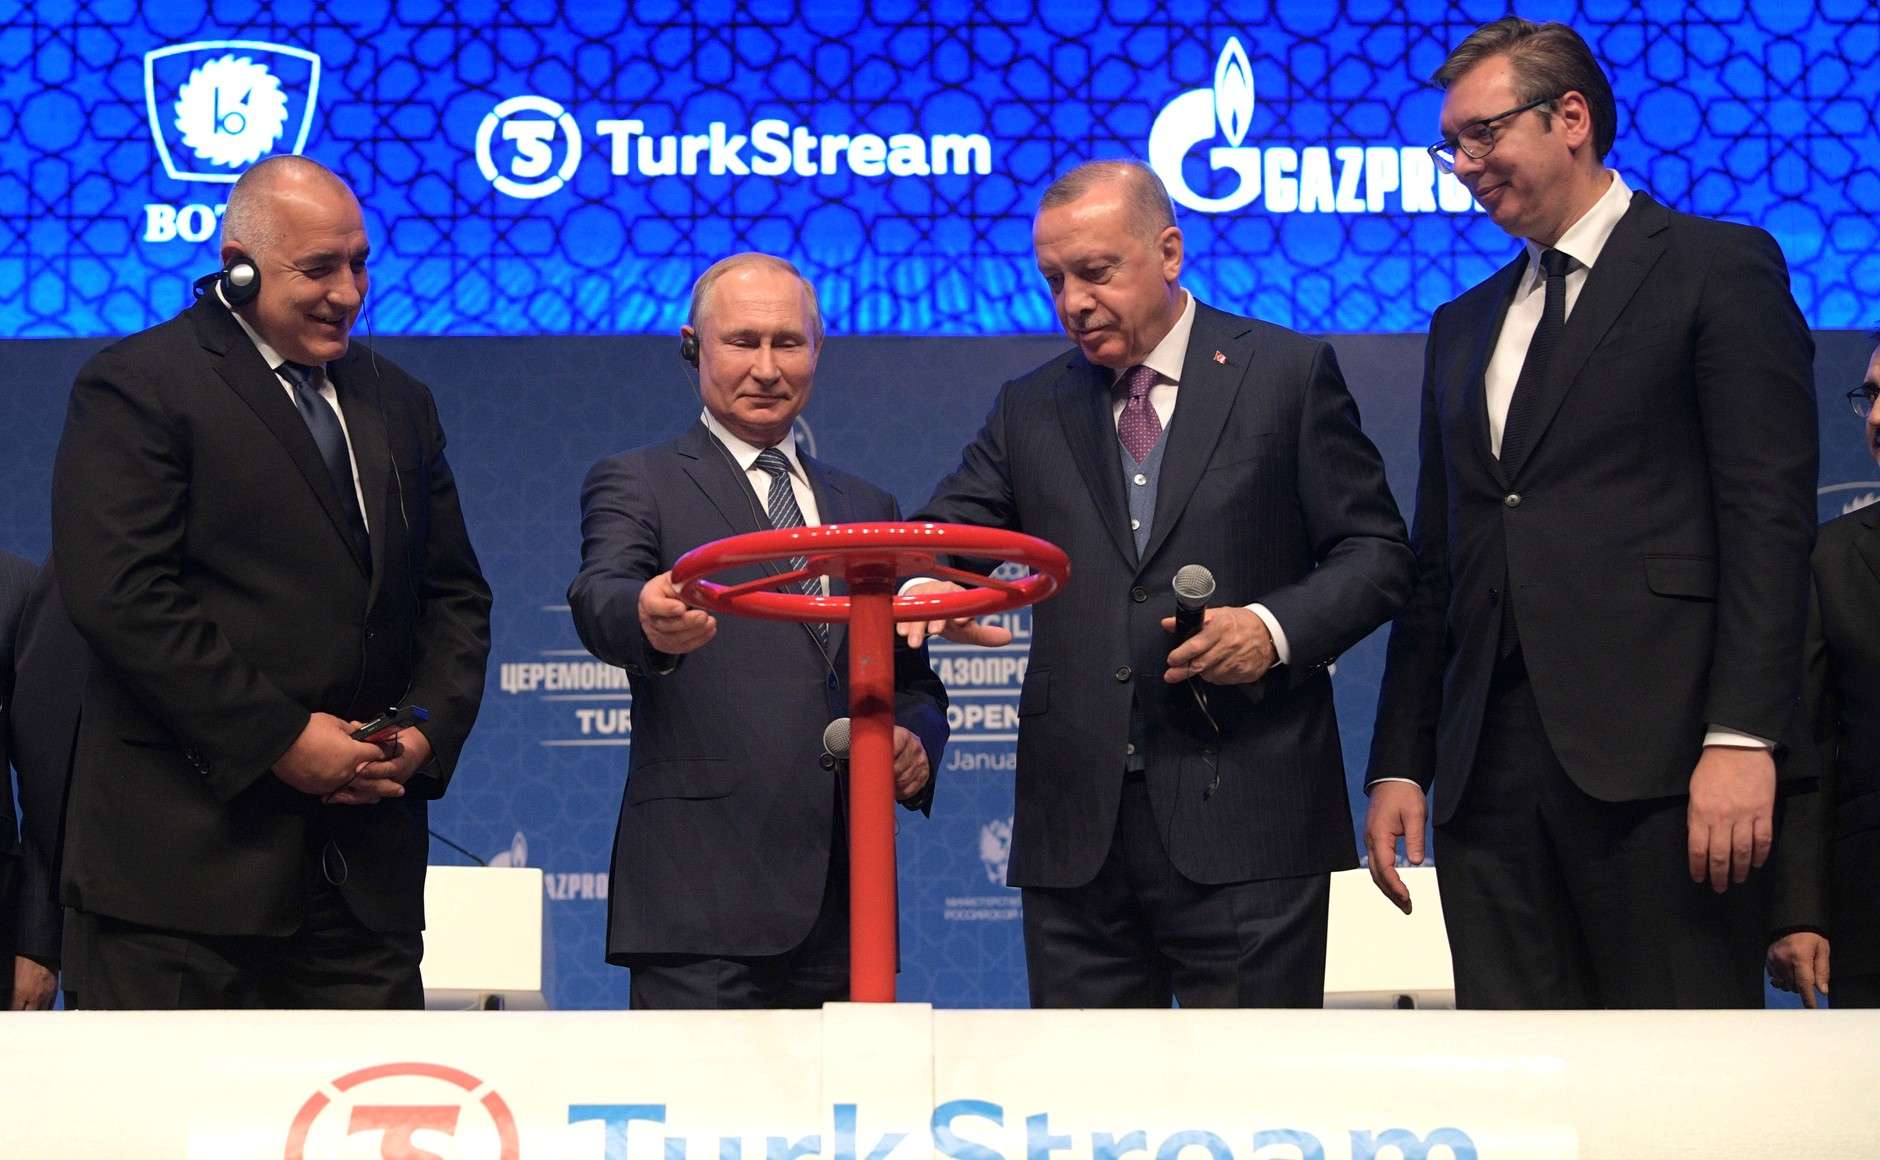 روسيا ترتهن تركيا بمشاريع ضخمة تعليقها سيكلف الاقتصاد التركي ثمنا باهظا